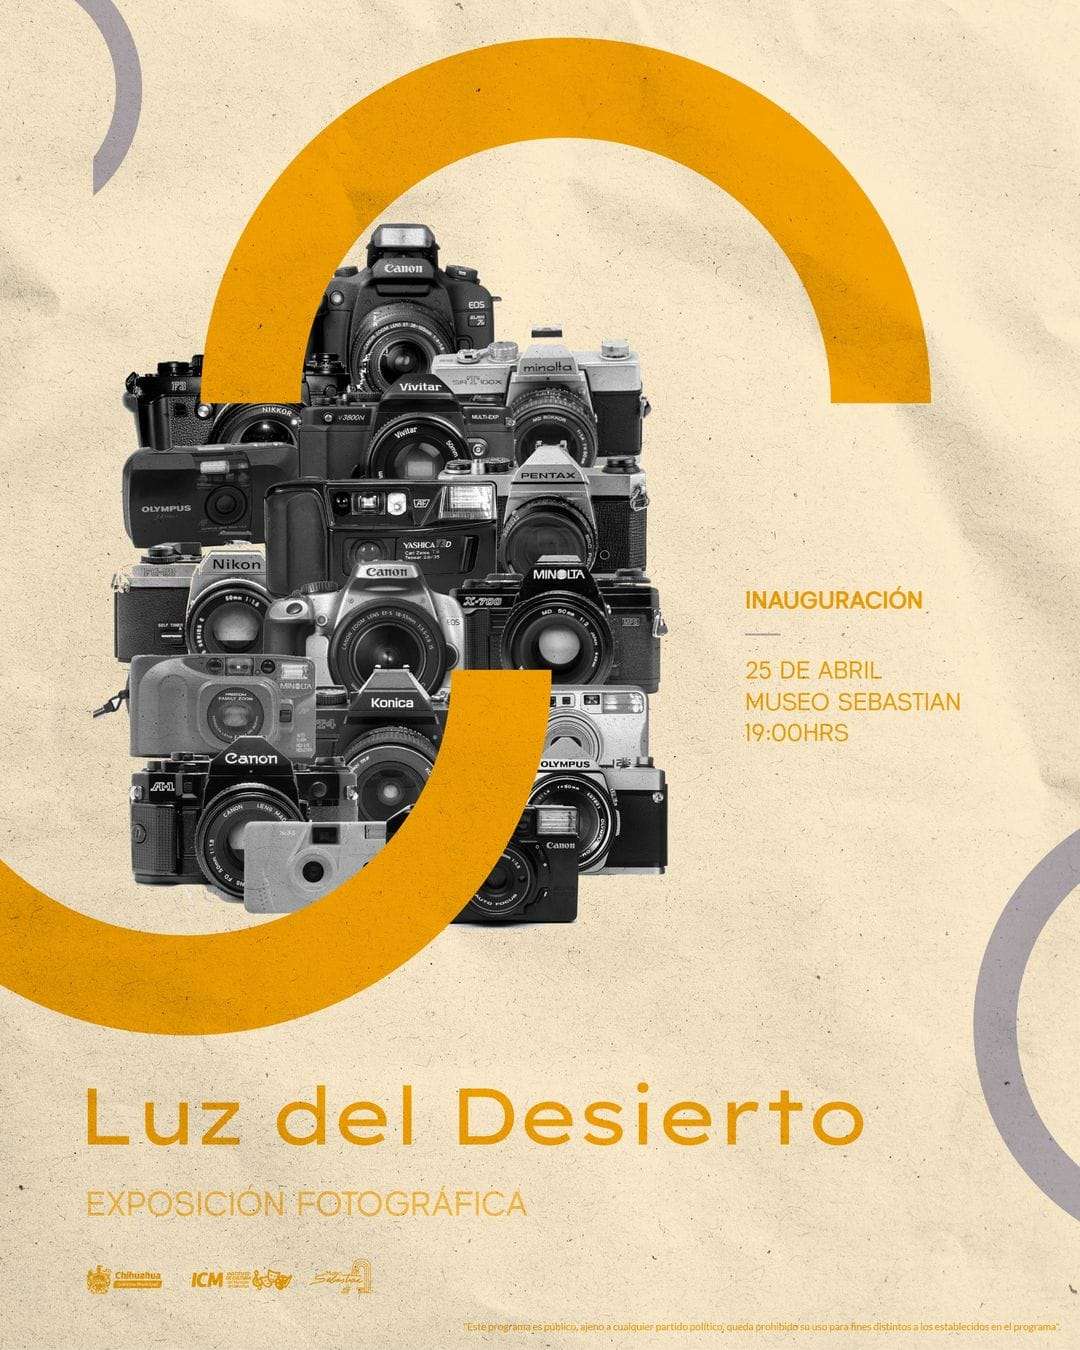 Invitan a la exposición Luz del Desierto en el Museo Sebastián
